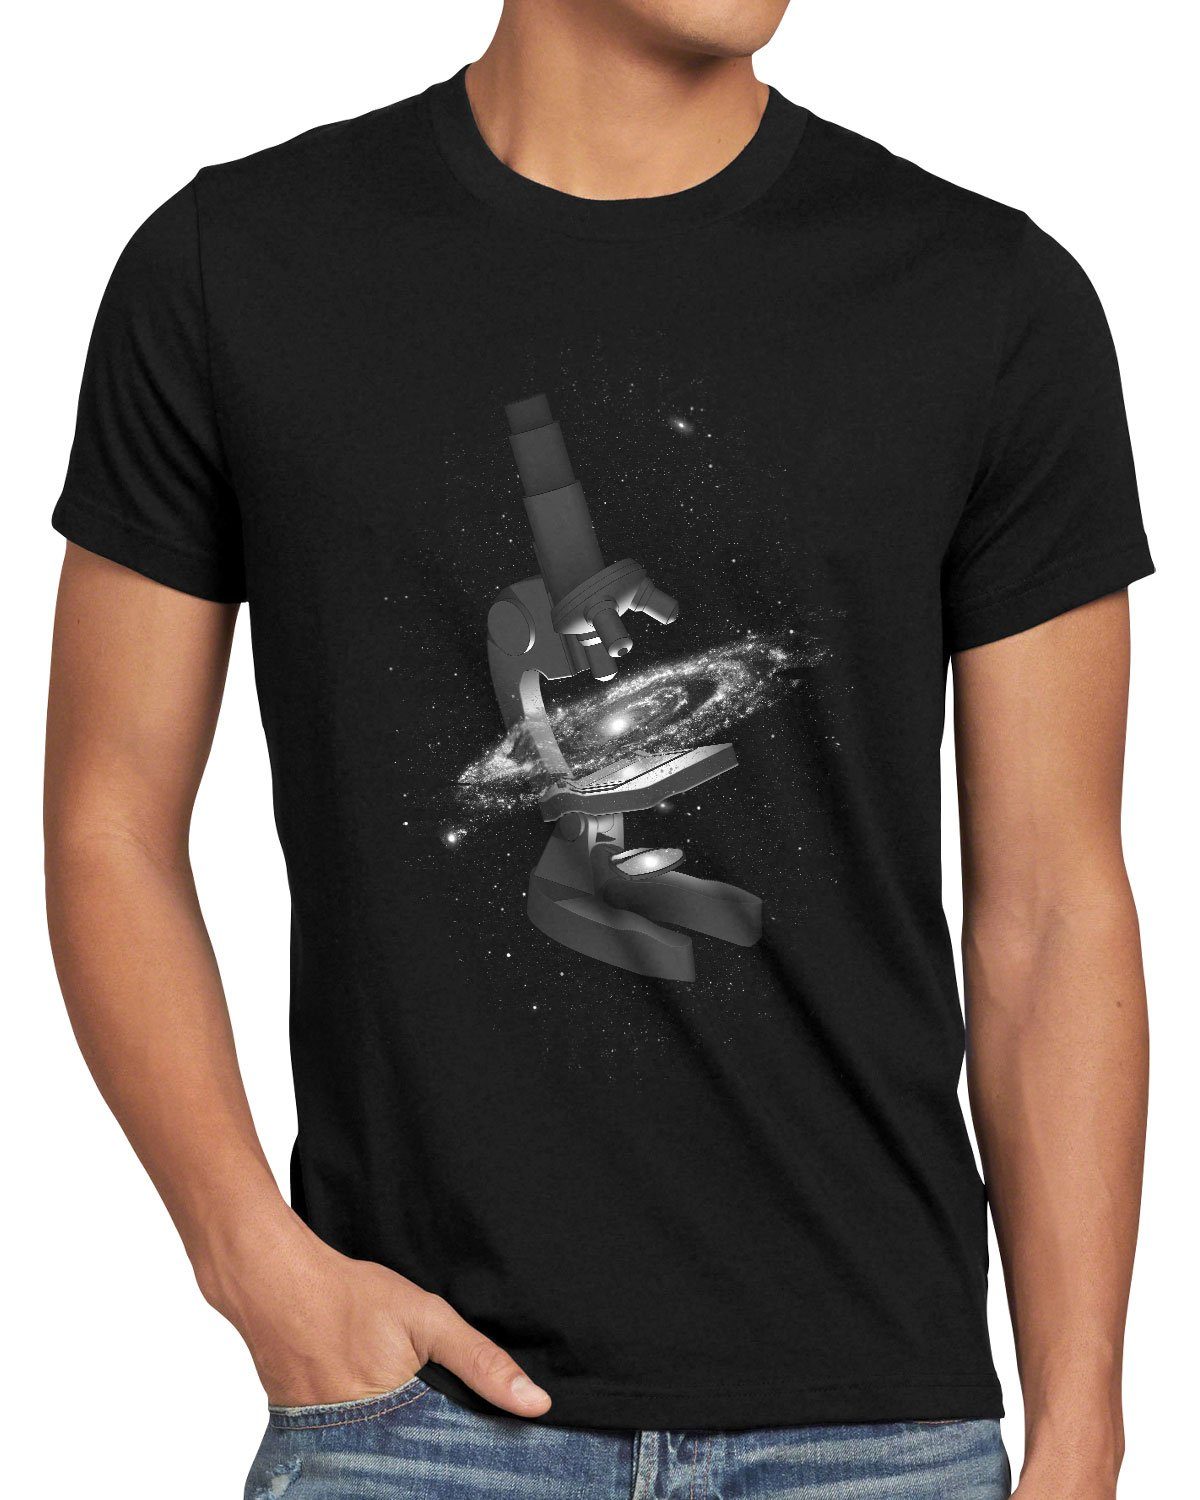 Herren Wissenschaft Print-Shirt style3 navigationssystem galaxie Universums T-Shirt des